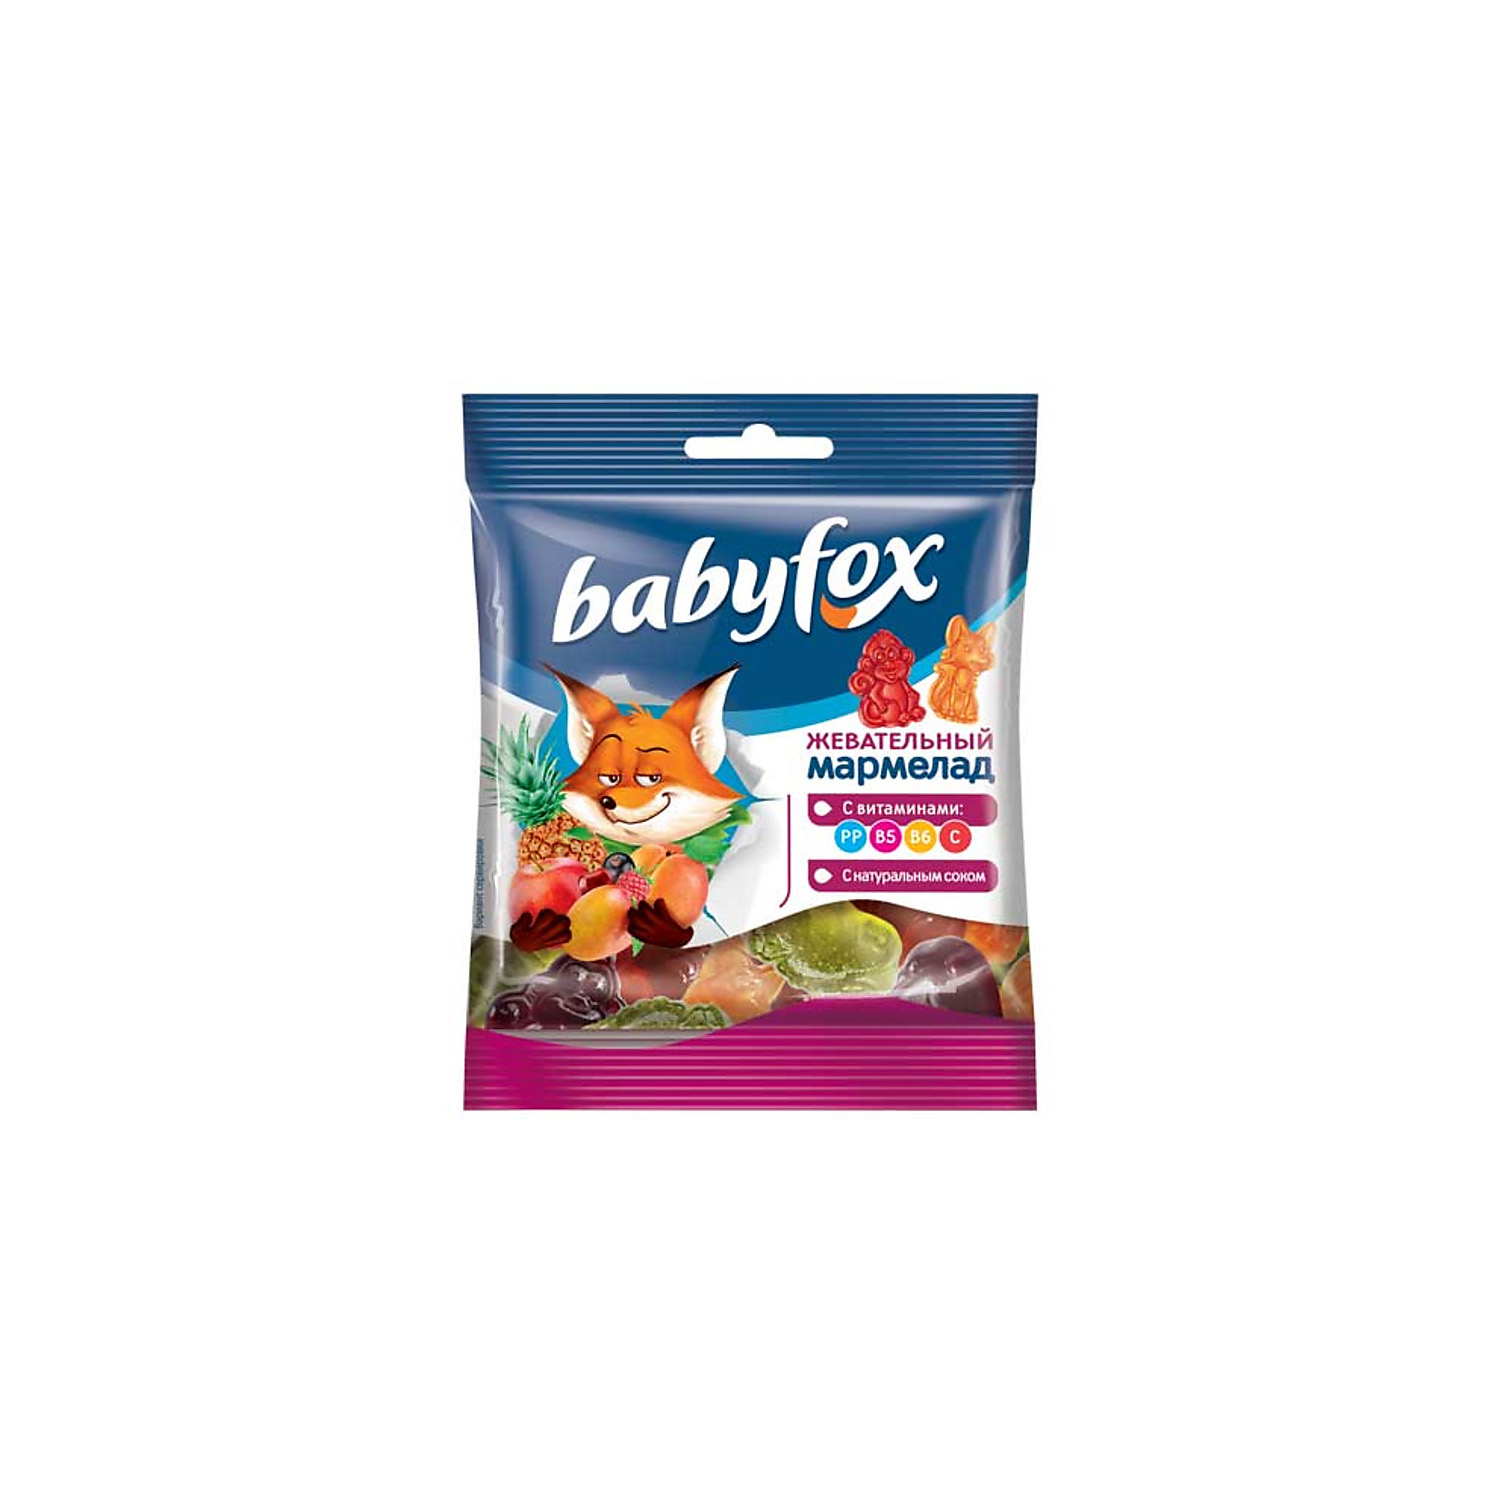 Мармелад BabyFox жевательный с соком ягод и фруктов 33 пачки по 30 грамм - фото 1